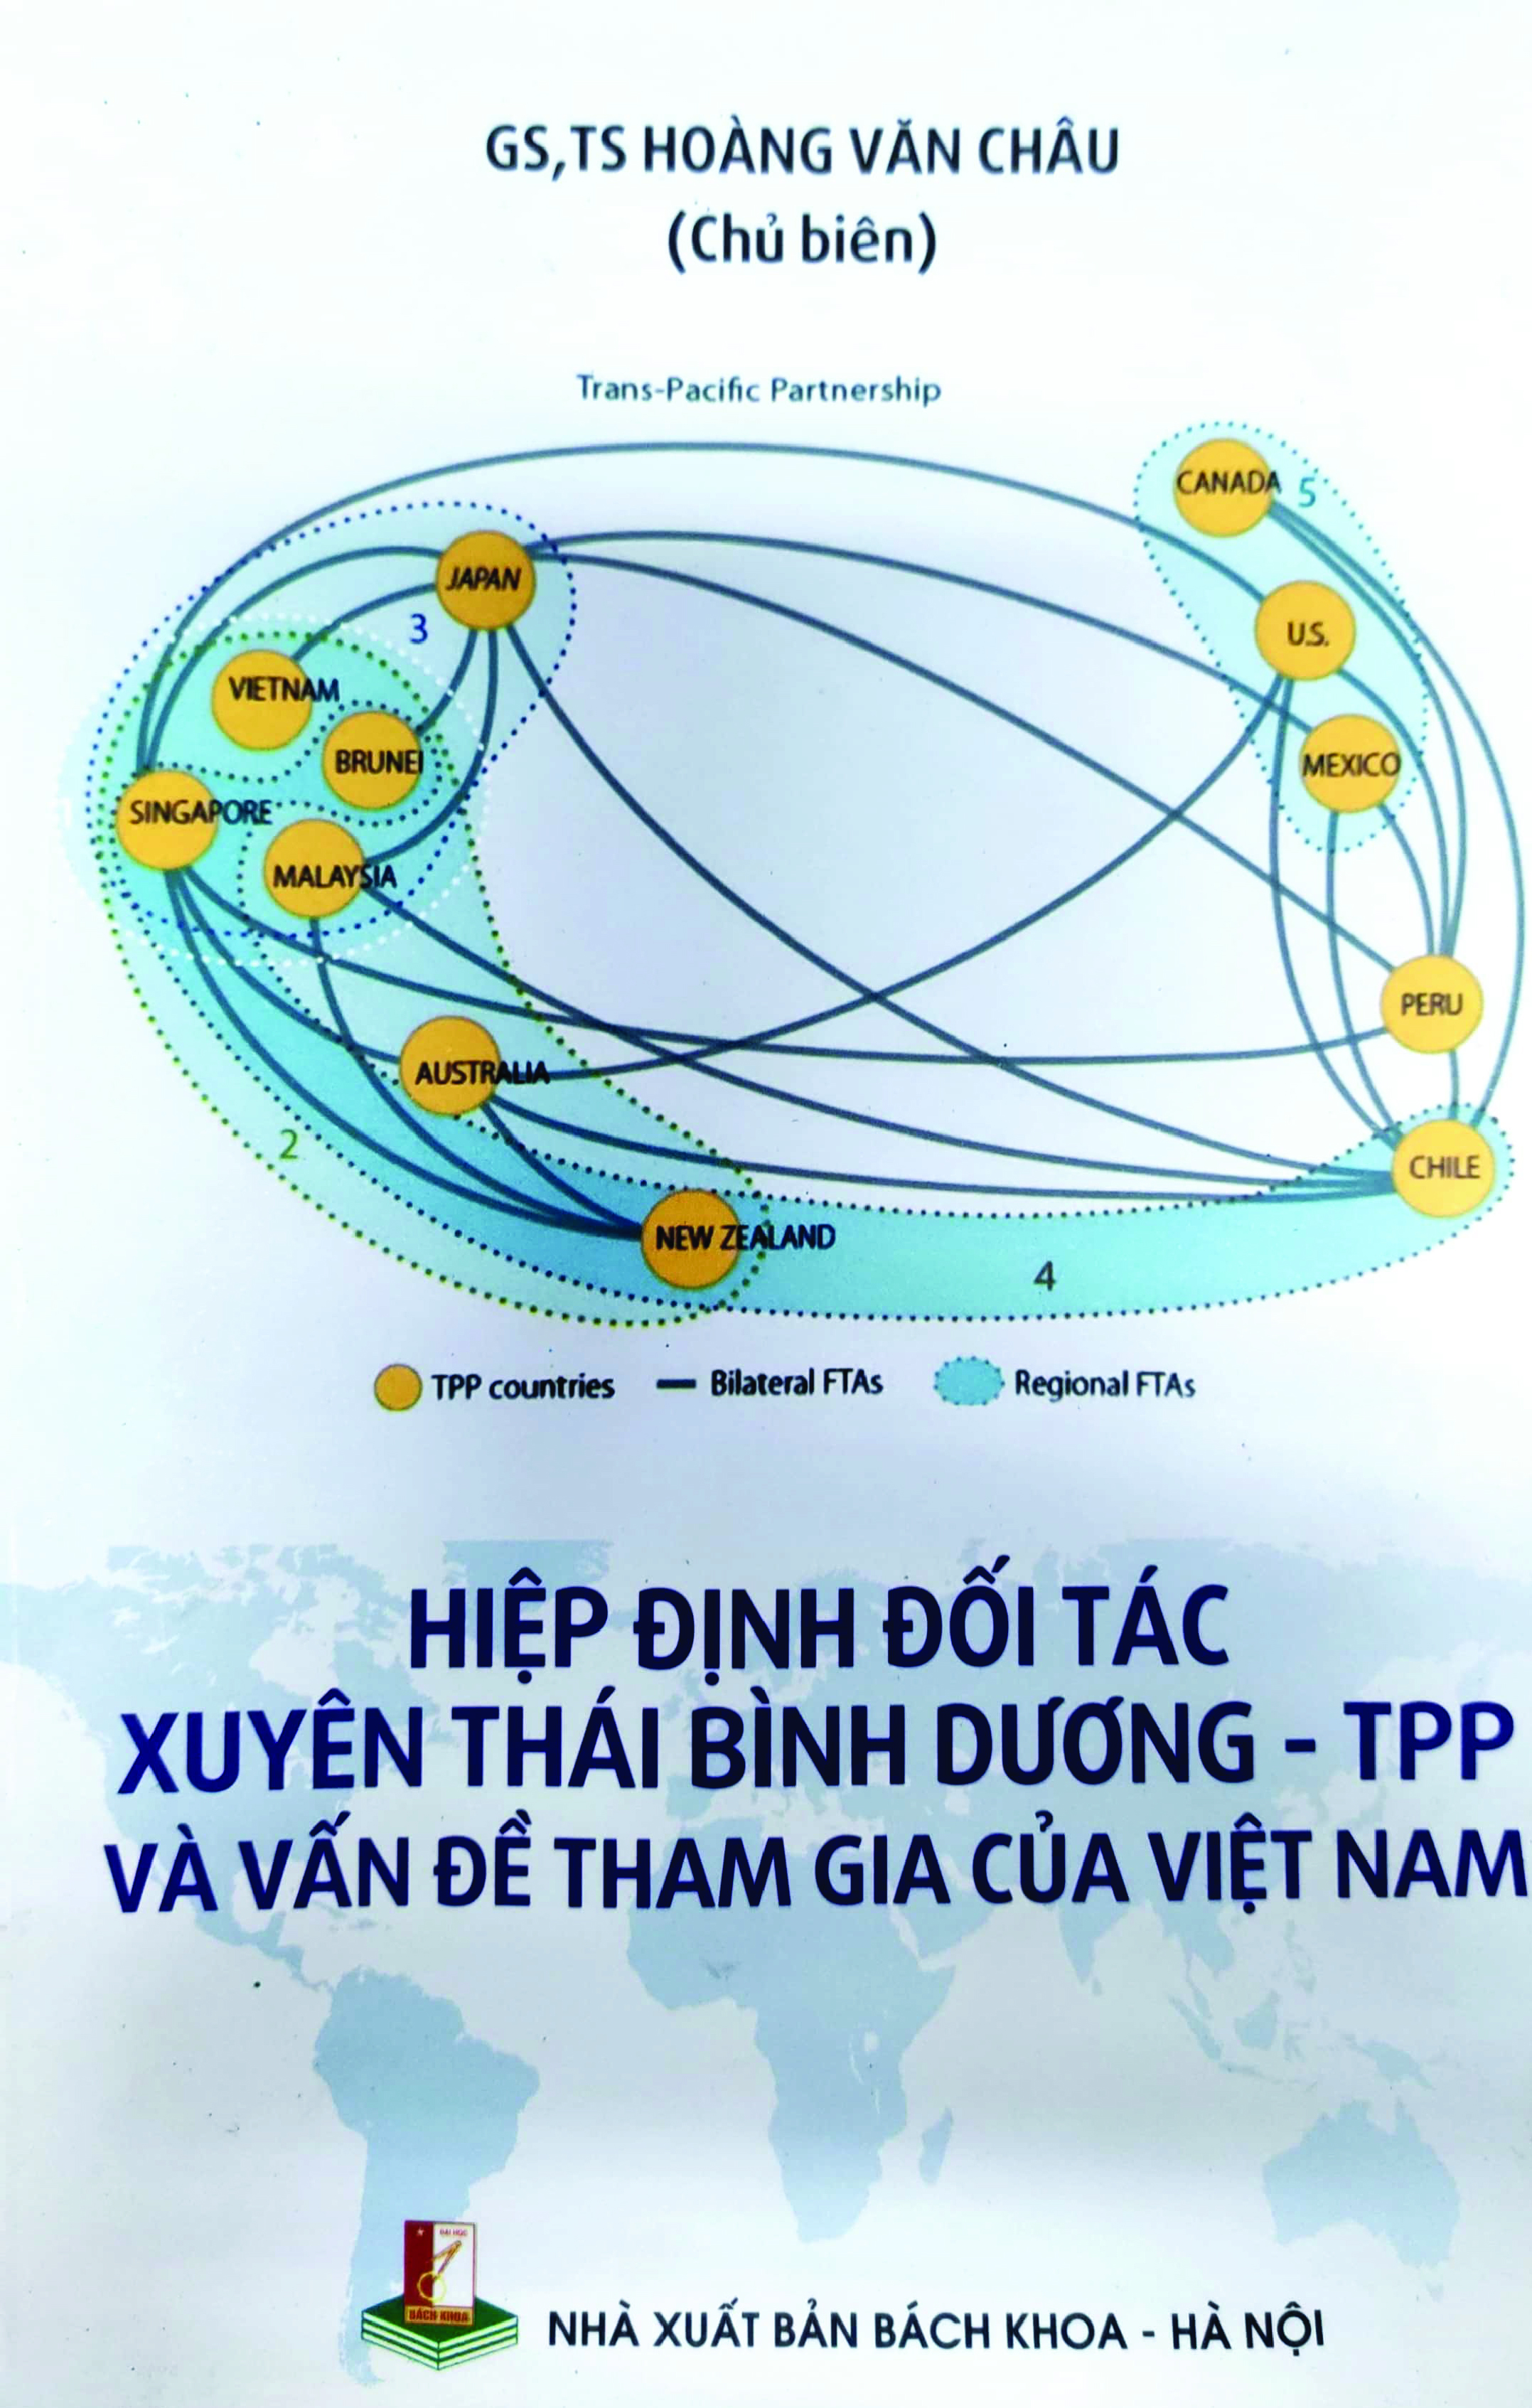 Hiệp định đối tác xuyên Thái Bình Dương - TPP và vấn đề tham gia của Việt Nam